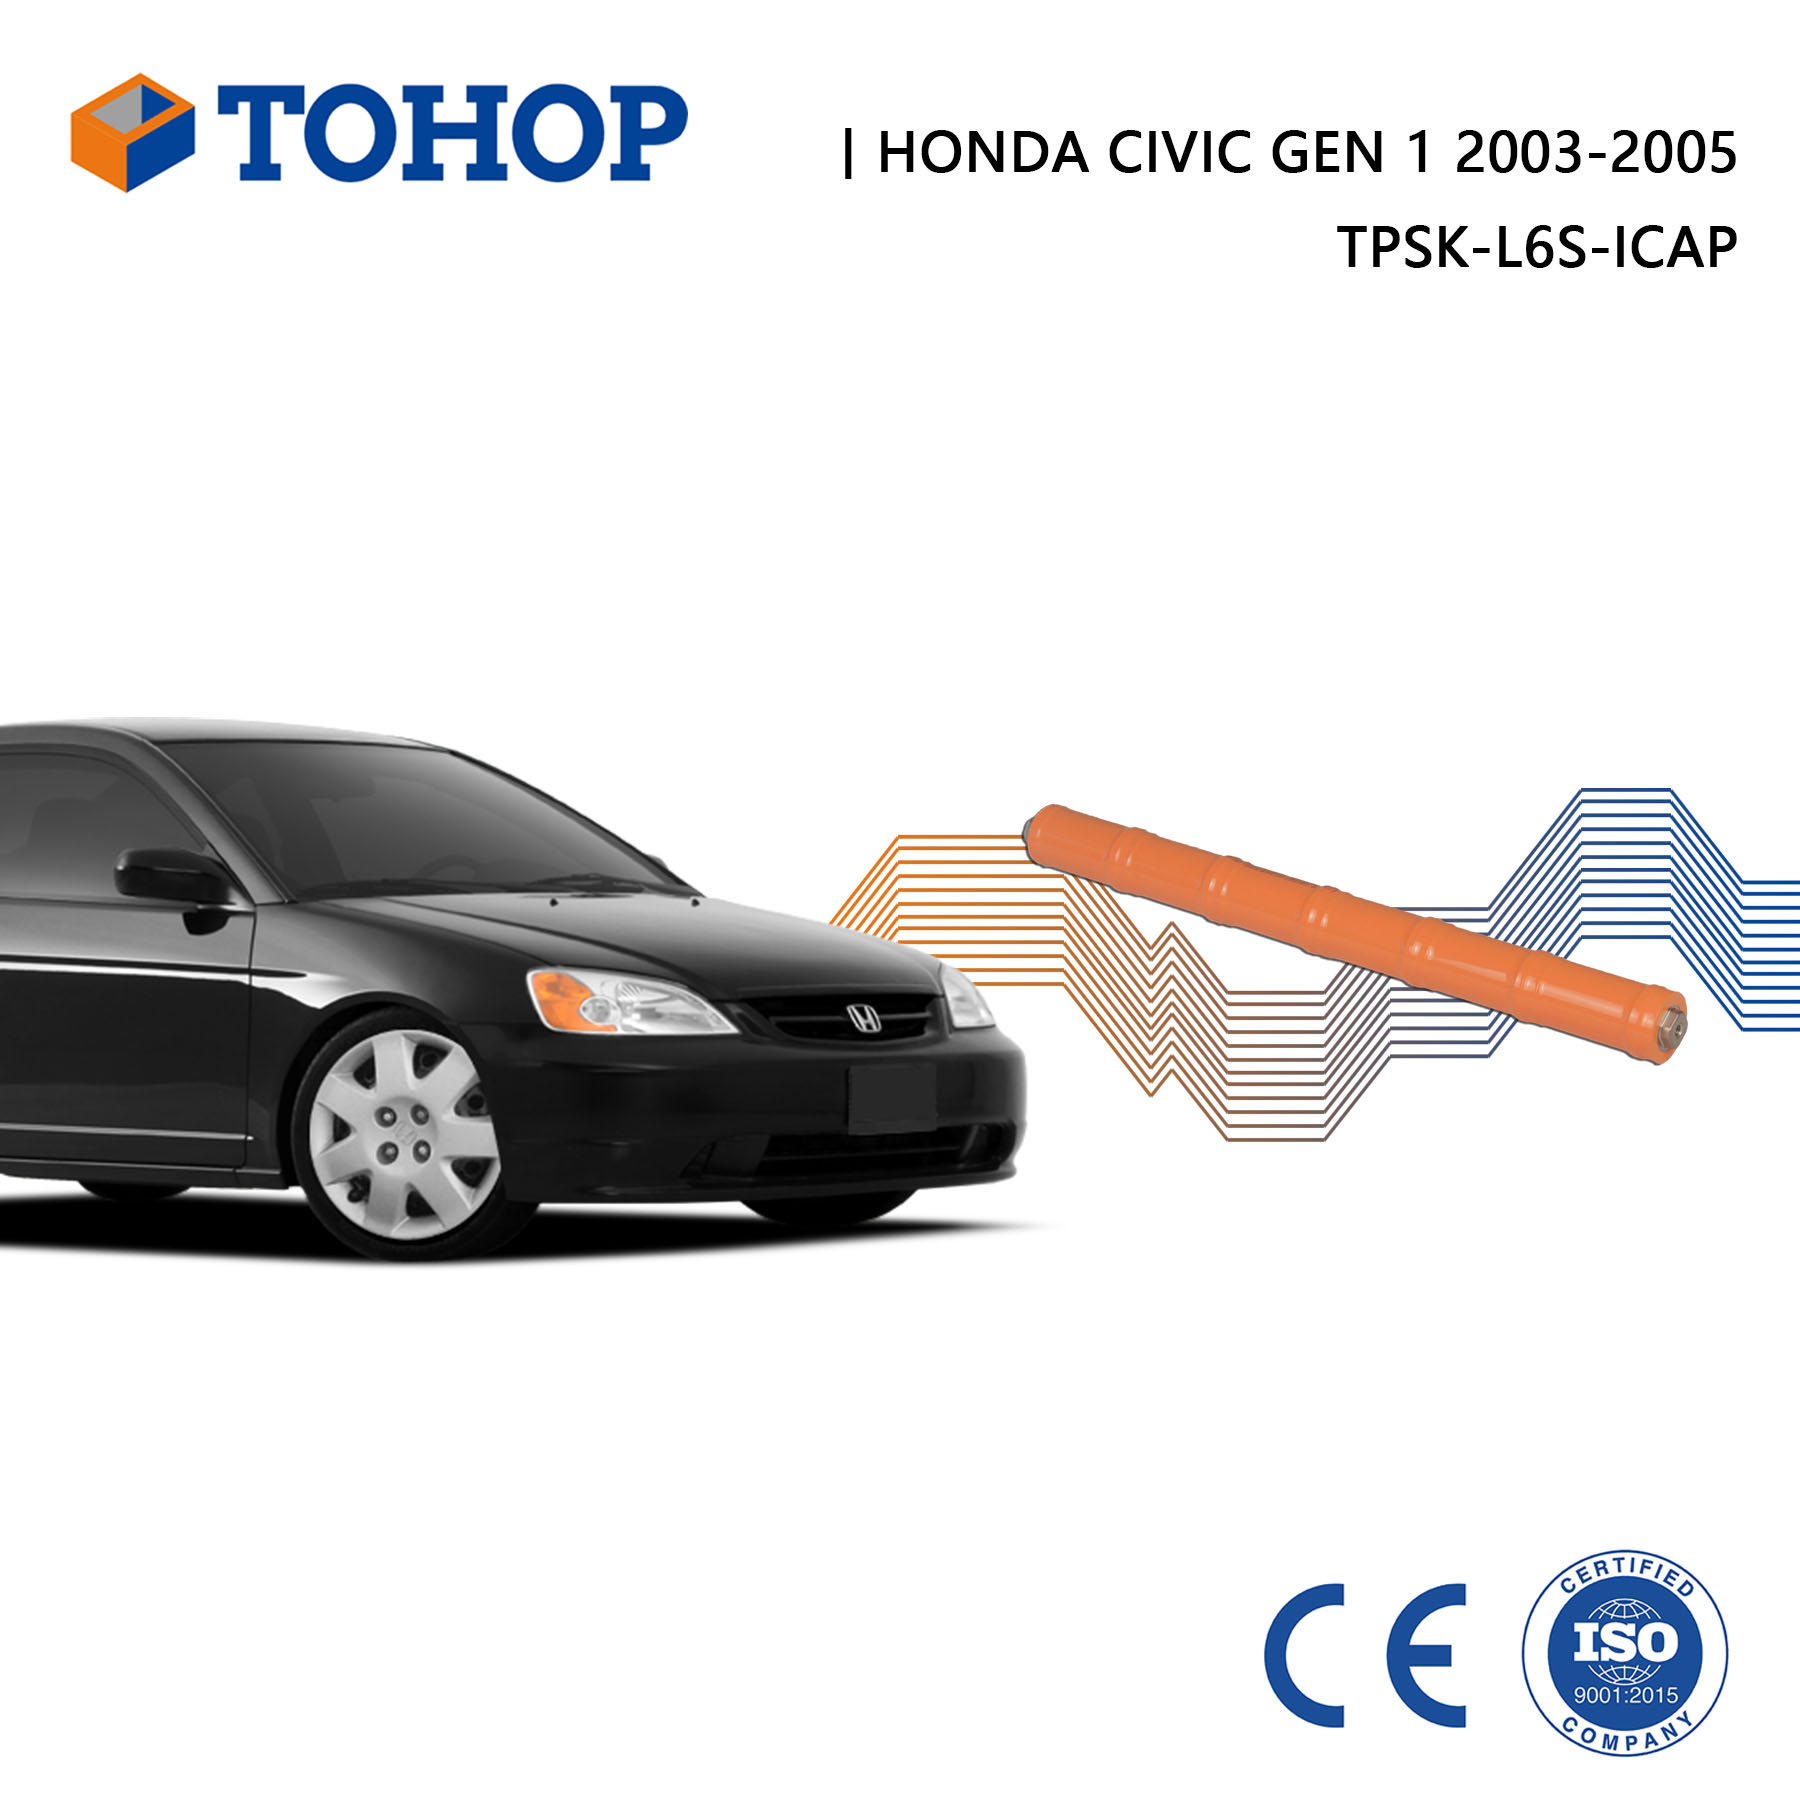 Batería híbrida Honda Civic Gen 1